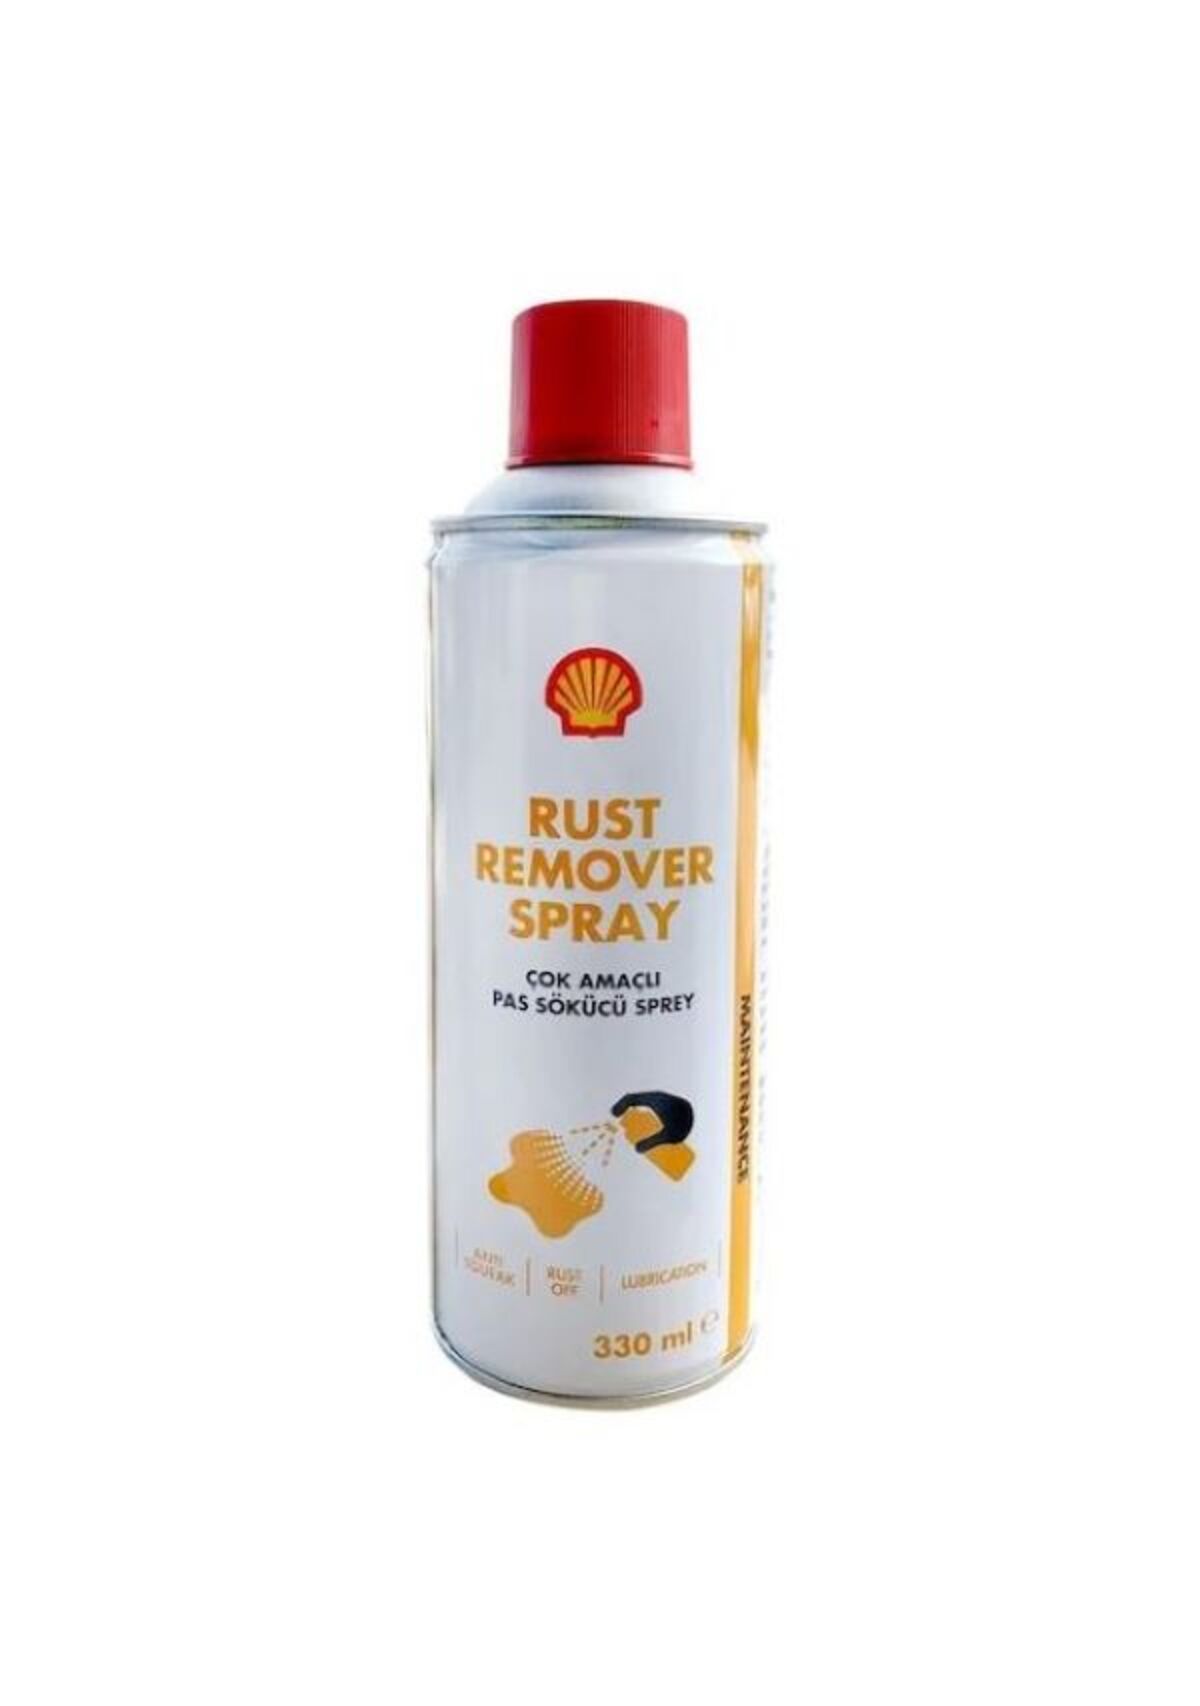 Shell Rust Remover Spray Çok Amaçlı Pas Sökücü Sprey 2200ml